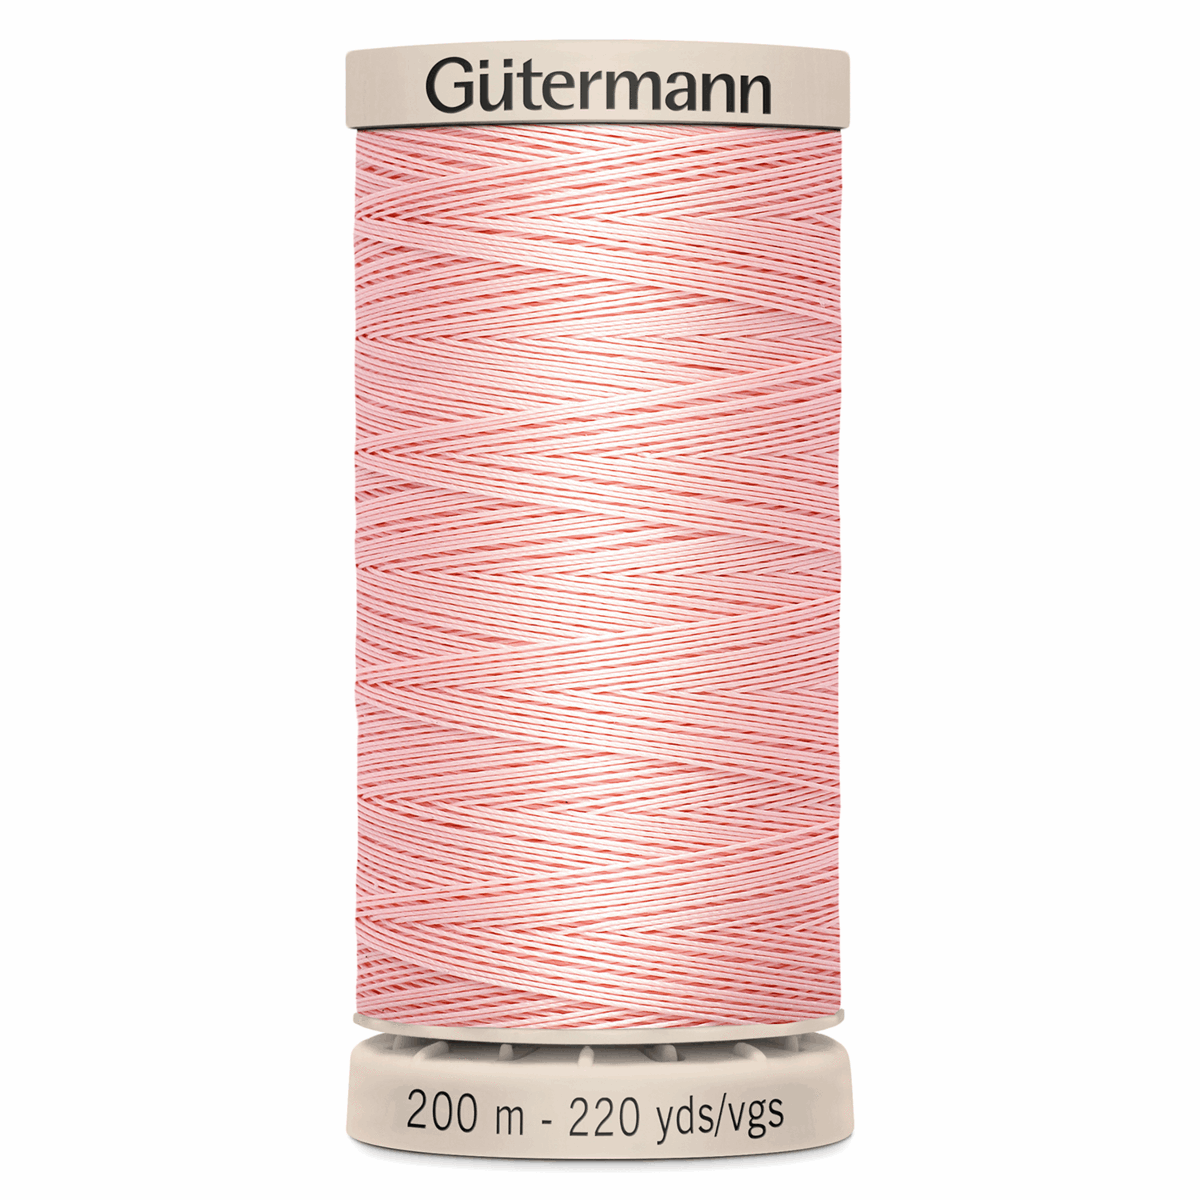 Gutermann Quilting Thread 200m - Colour 2538